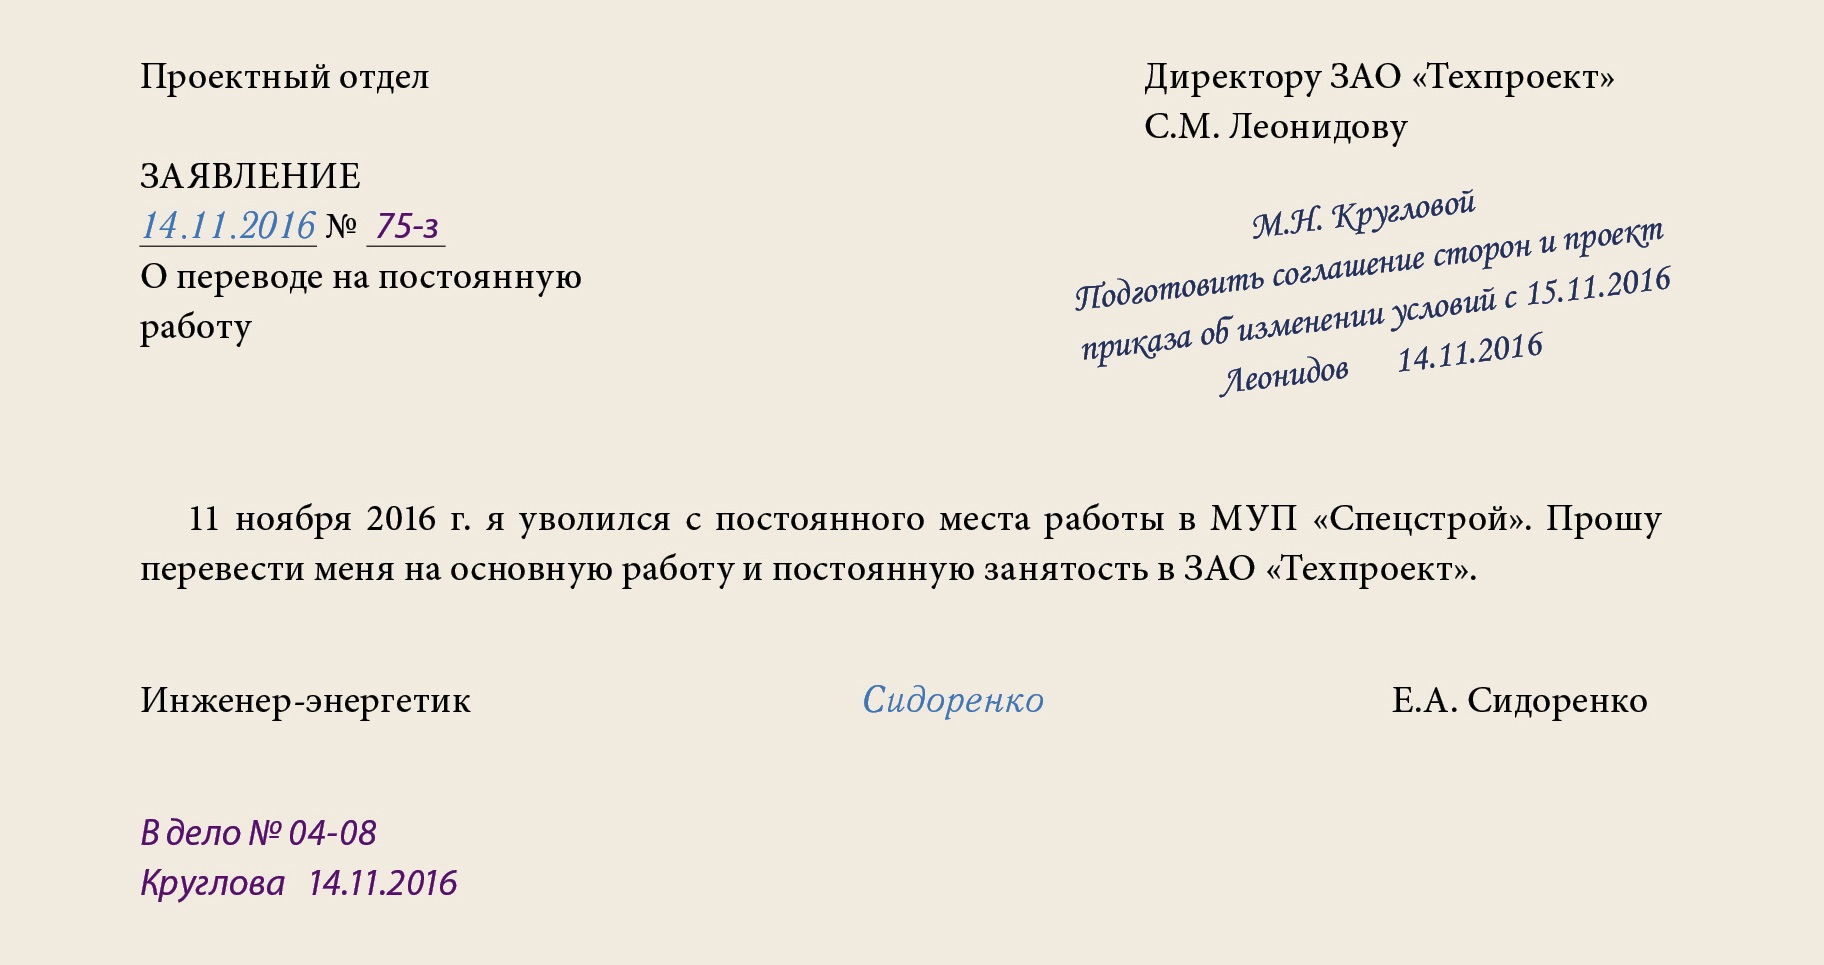 Калининский районный суд спб официальный сайт судопроизводство